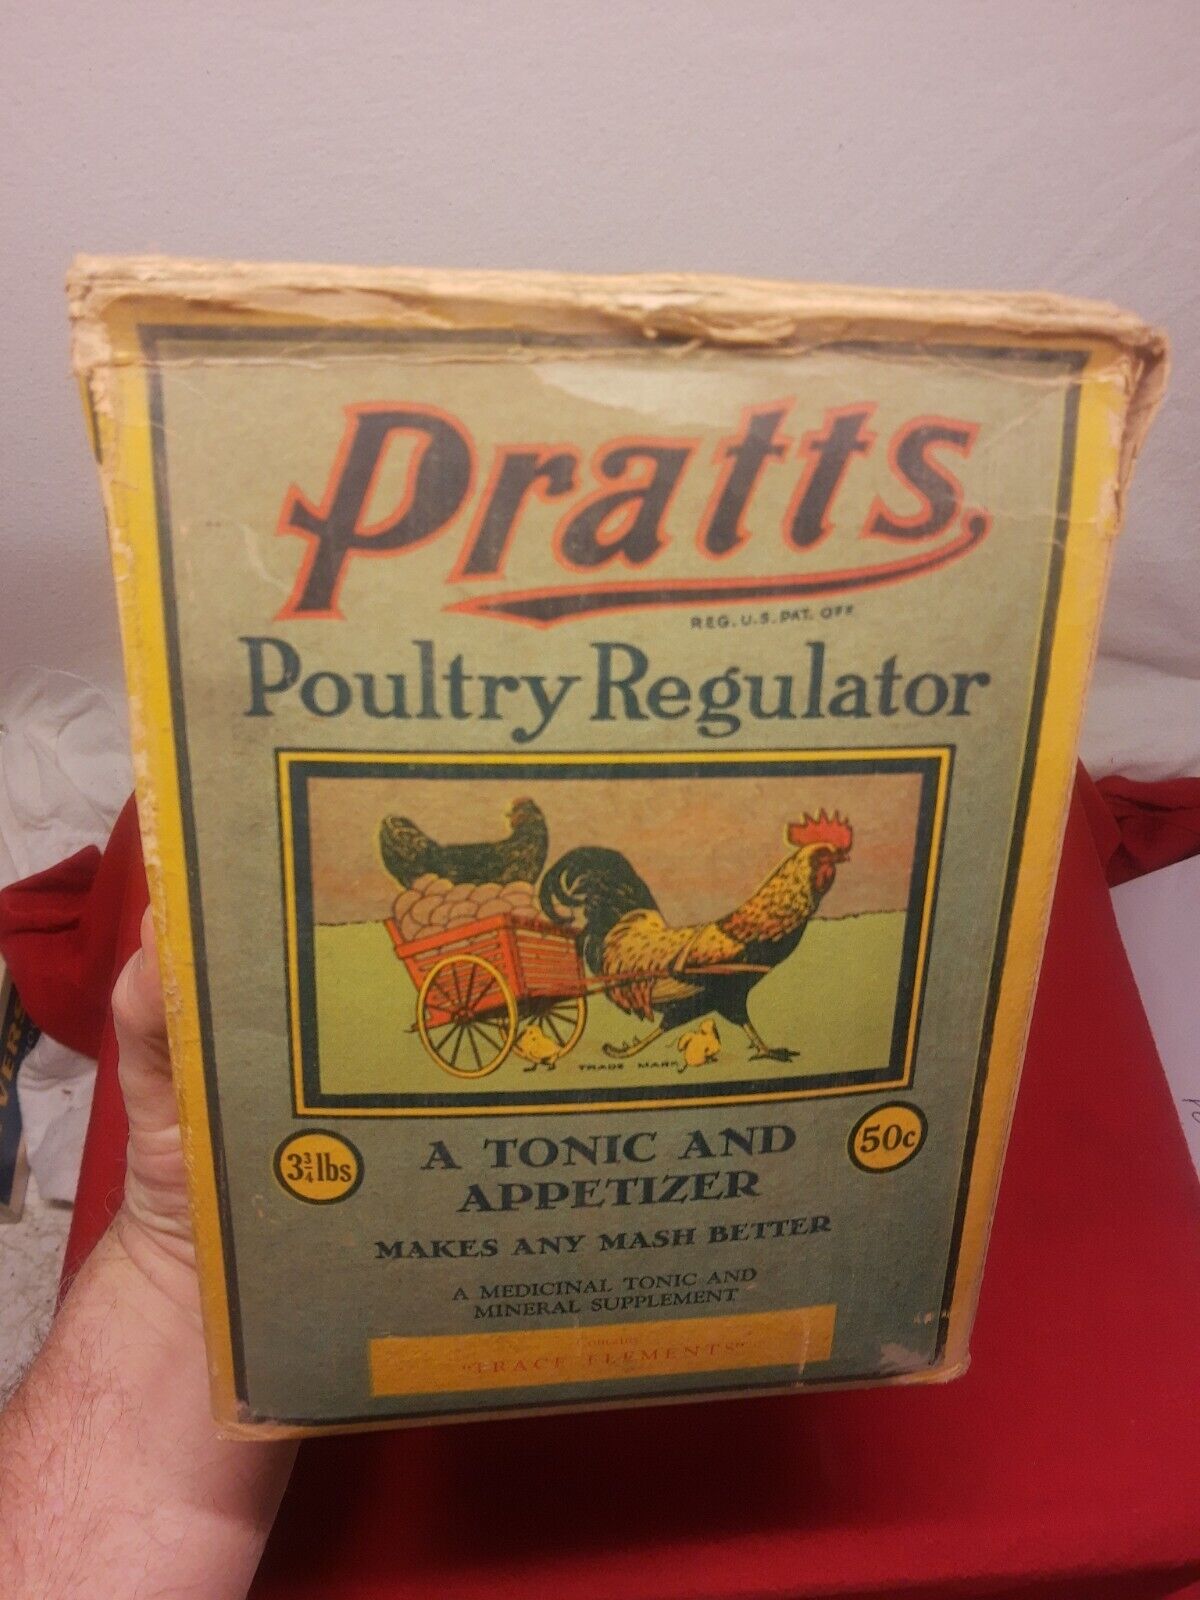 RARE NOS Box 1942 Platts Poultry Regulator Full Chicken Feed Farm Advertising 